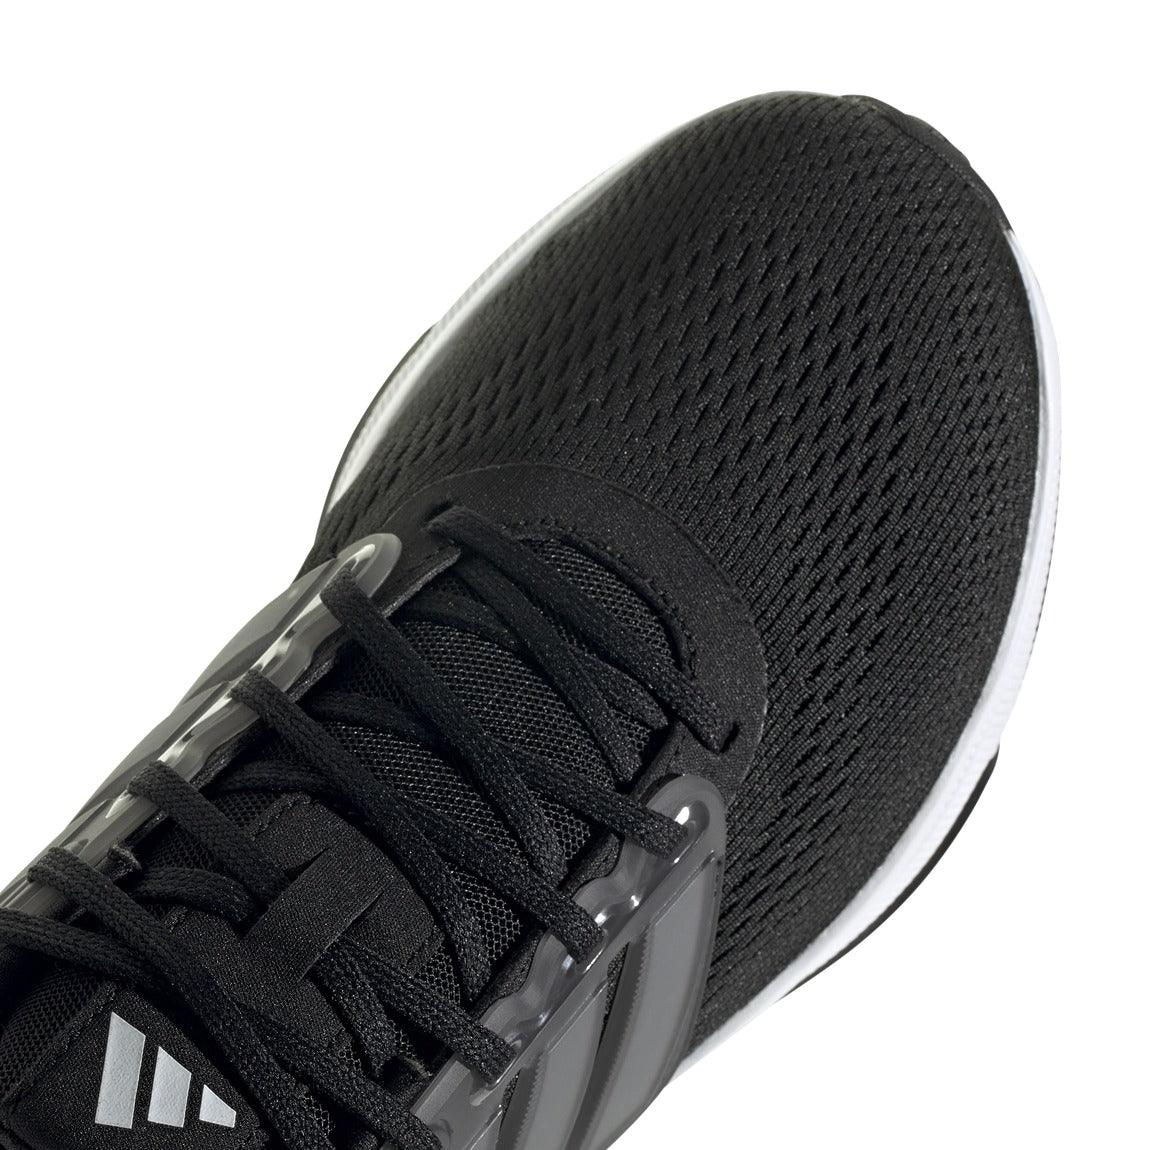 adidas Ultrabounce Running Shoes - Men